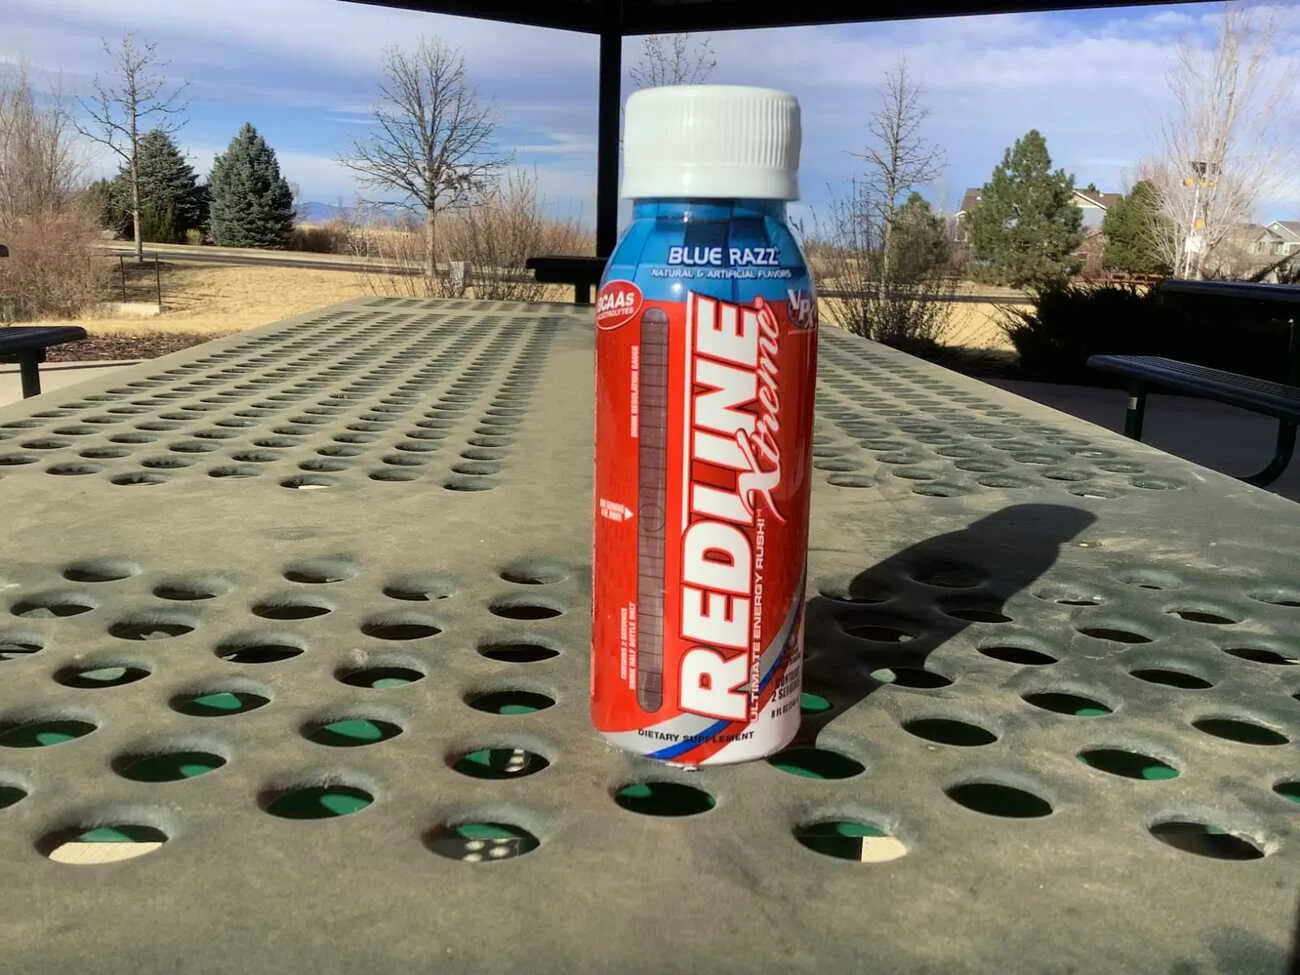 Bottle of Redline Xtreme Energy